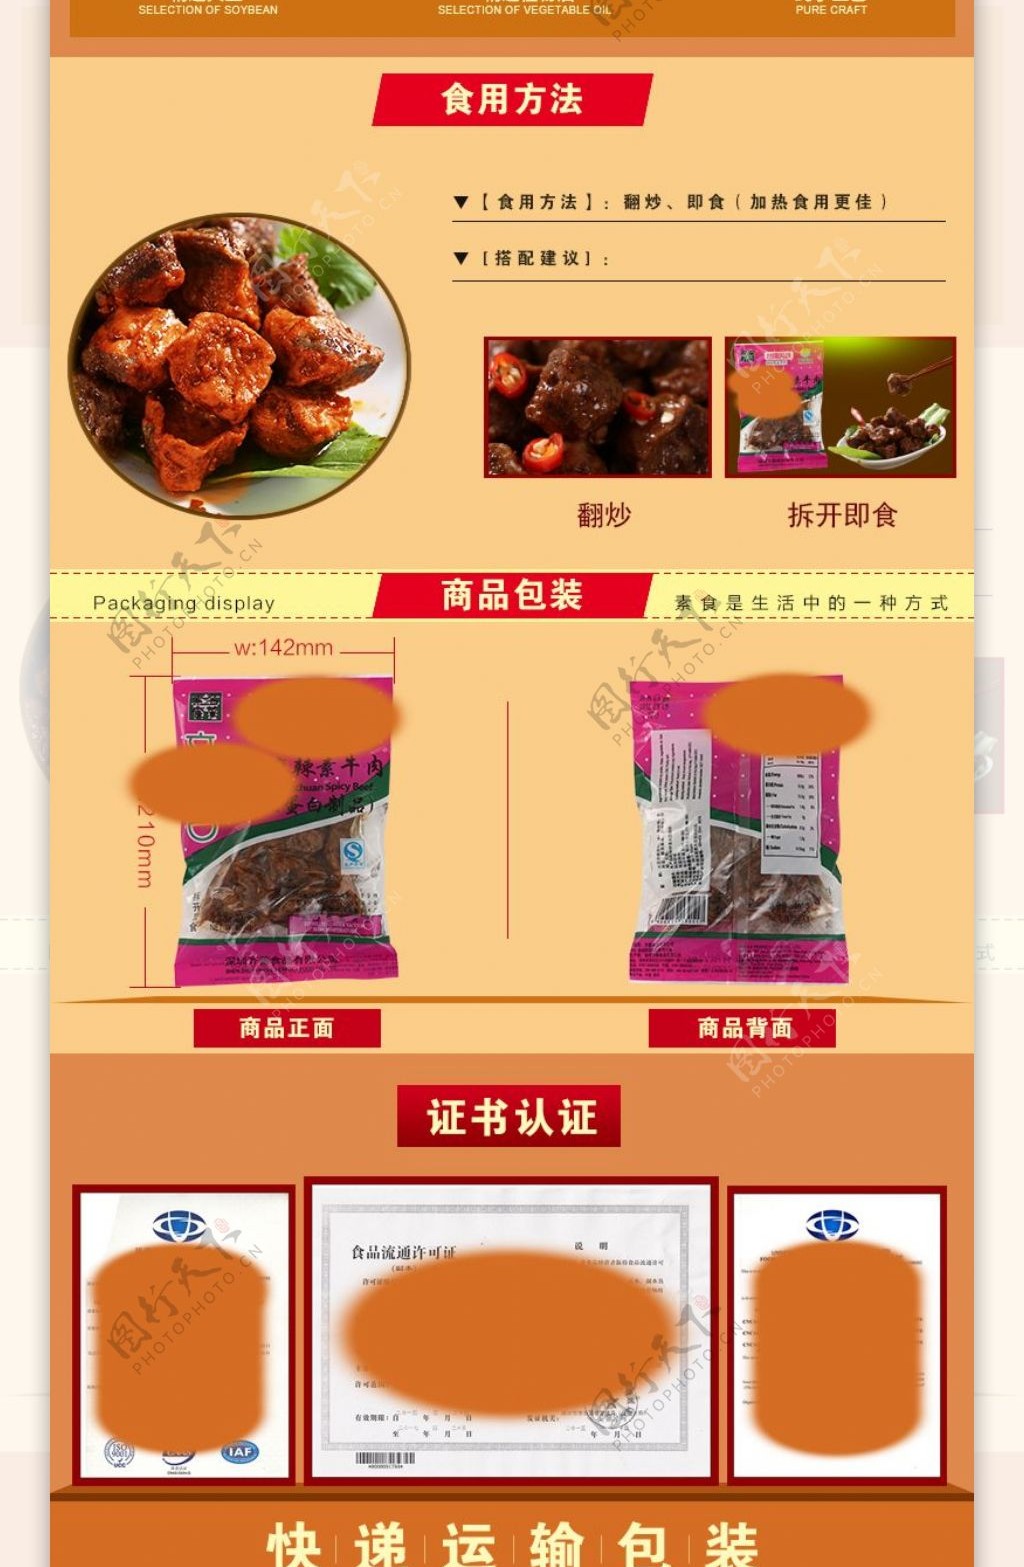 淘宝天猫店铺素食食品详情页描述页